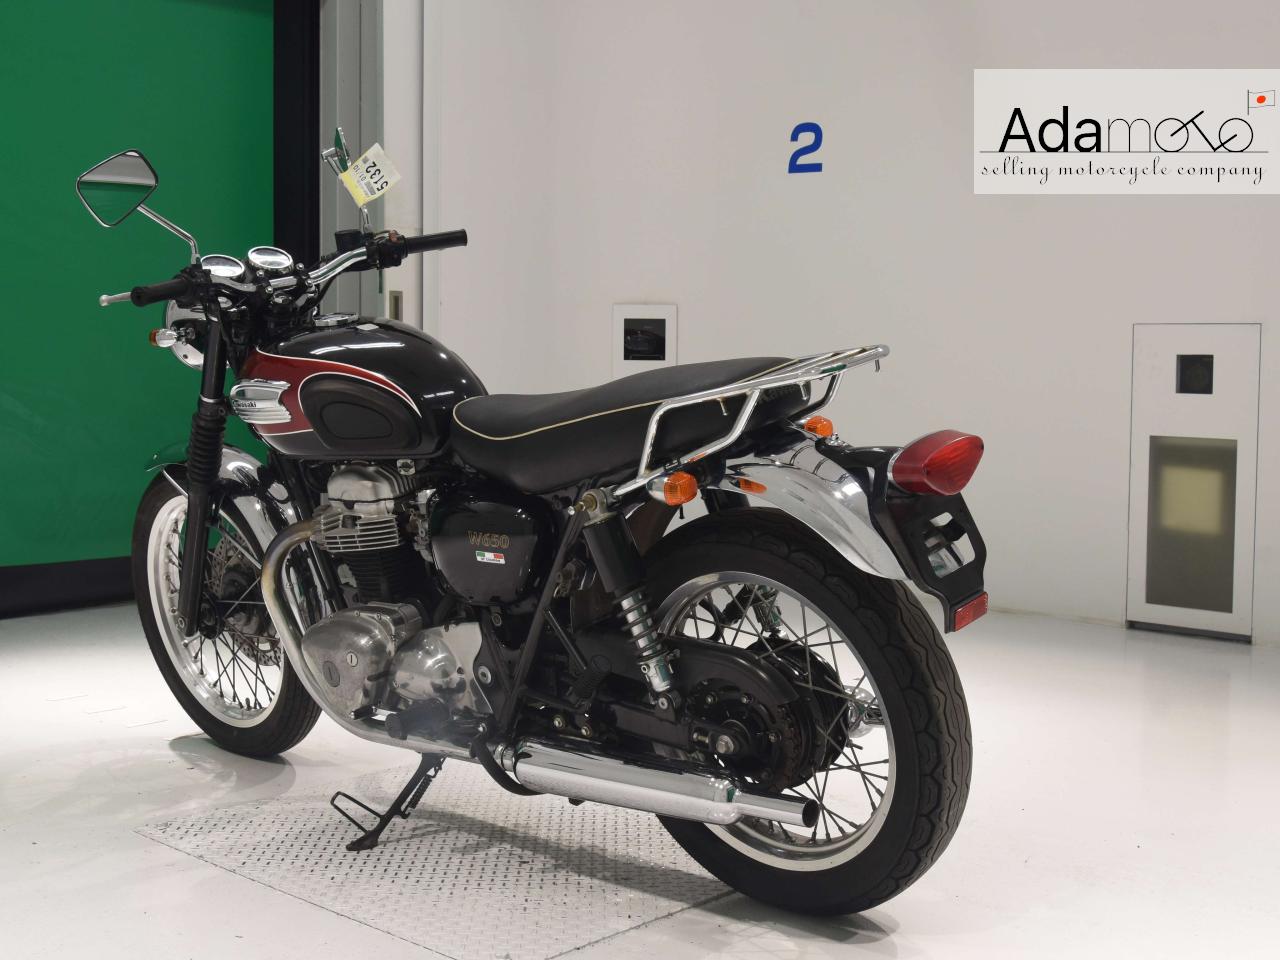 Kawasaki W650 - Adamoto - Motorcycles from Japan